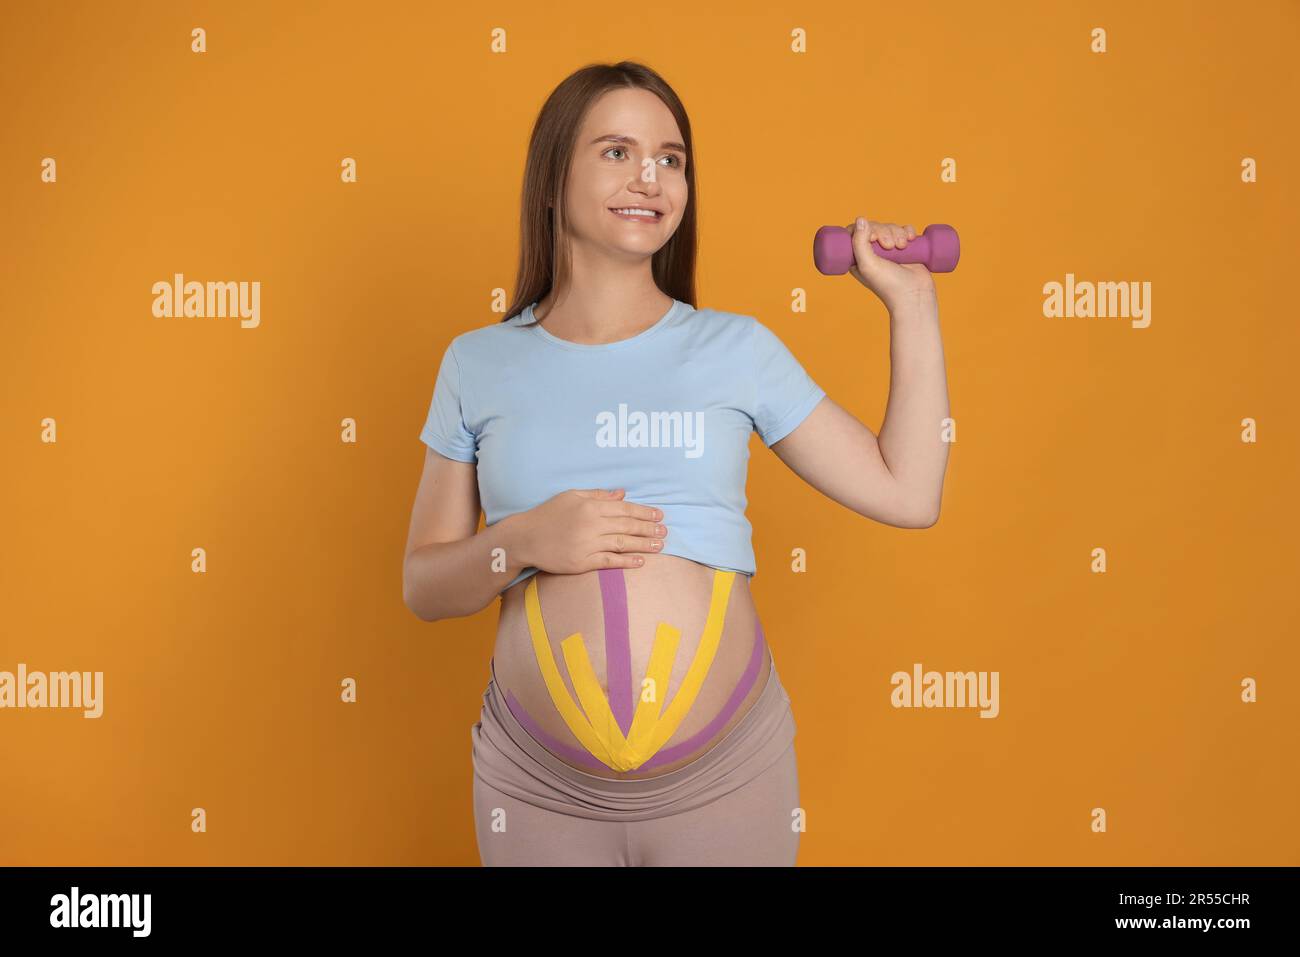 Mujer embarazada con cintas de kinesio en su vientre haciendo ejercicios contra fondo naranja Foto de stock